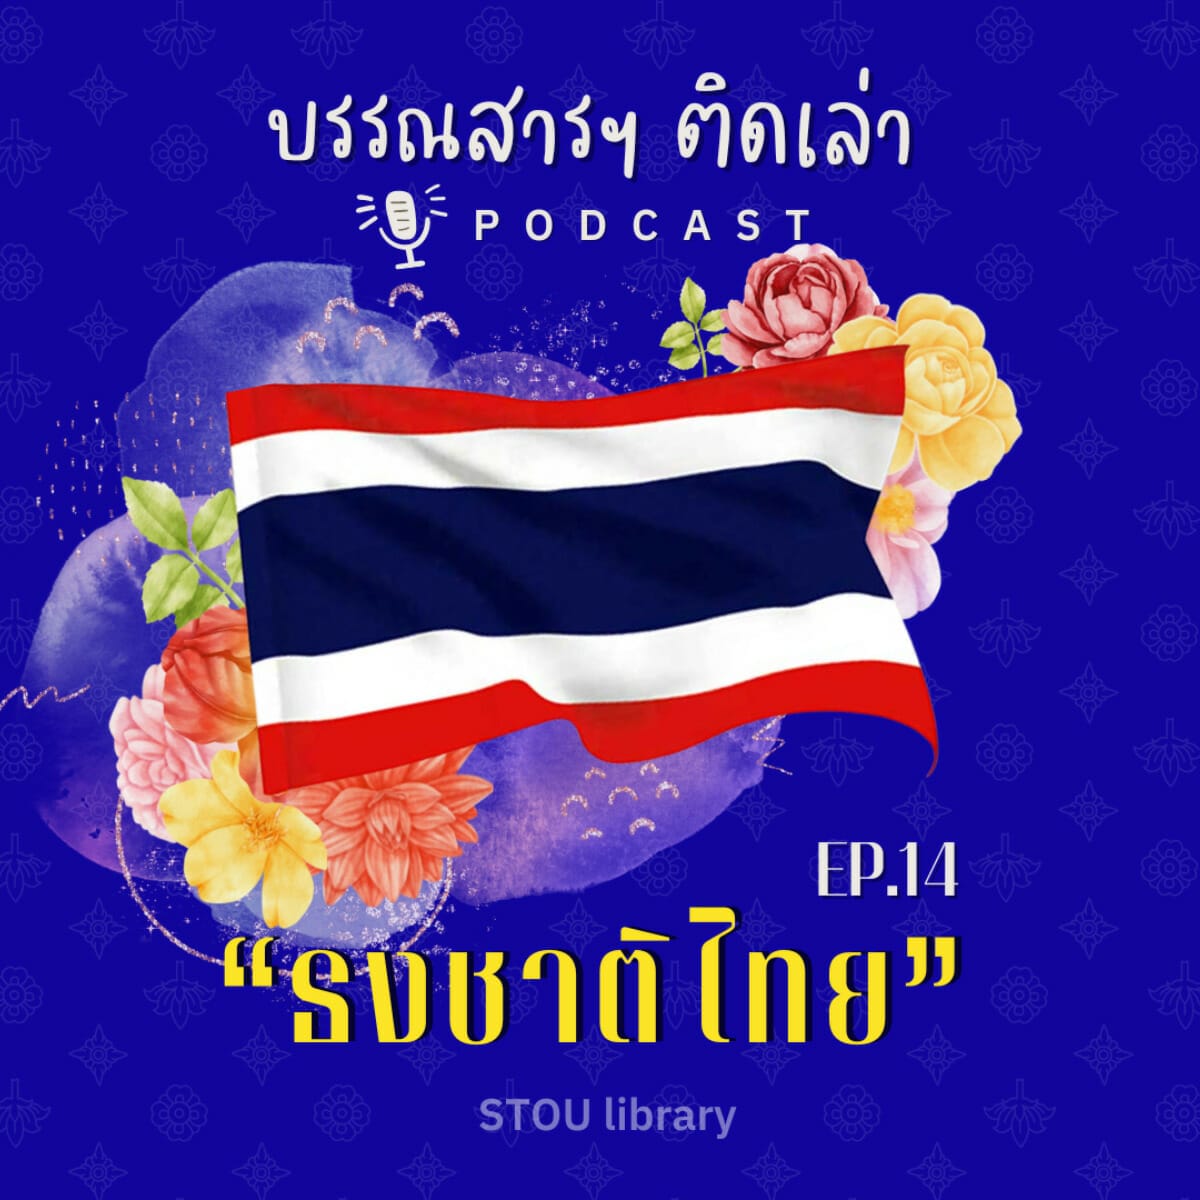 บรรณสารฯ ติดเล่า PODCAST EP.14 “ธงชาติไทย”